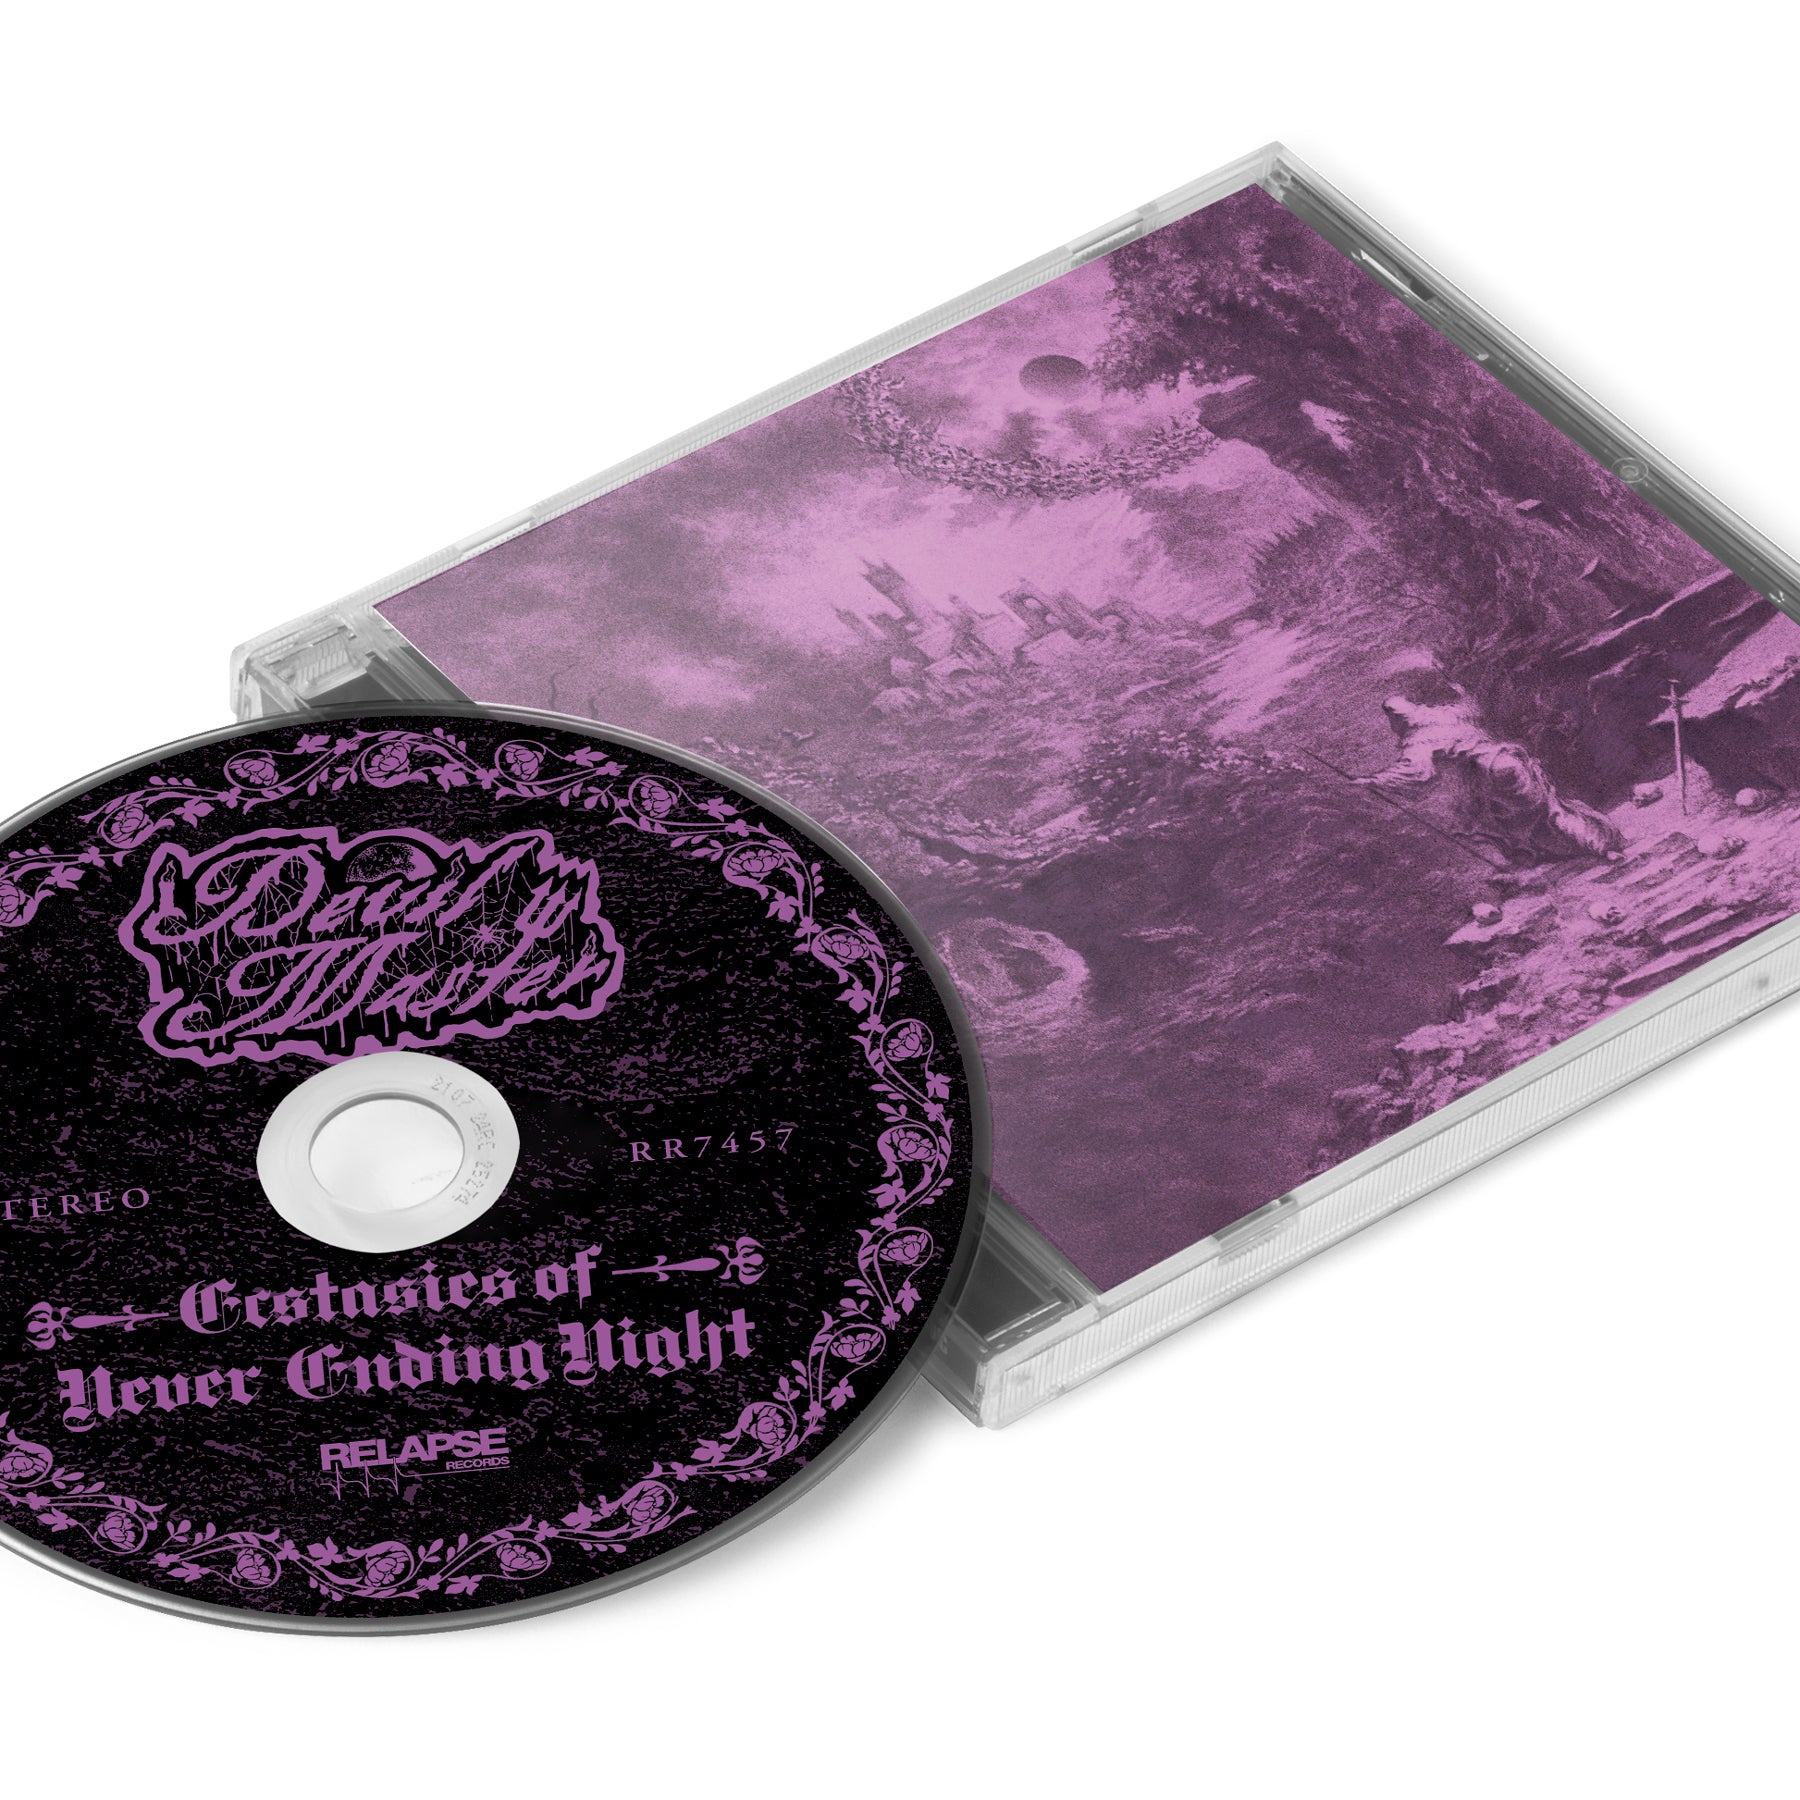 Devil Master "Ecstasies of Never Ending Night" CD